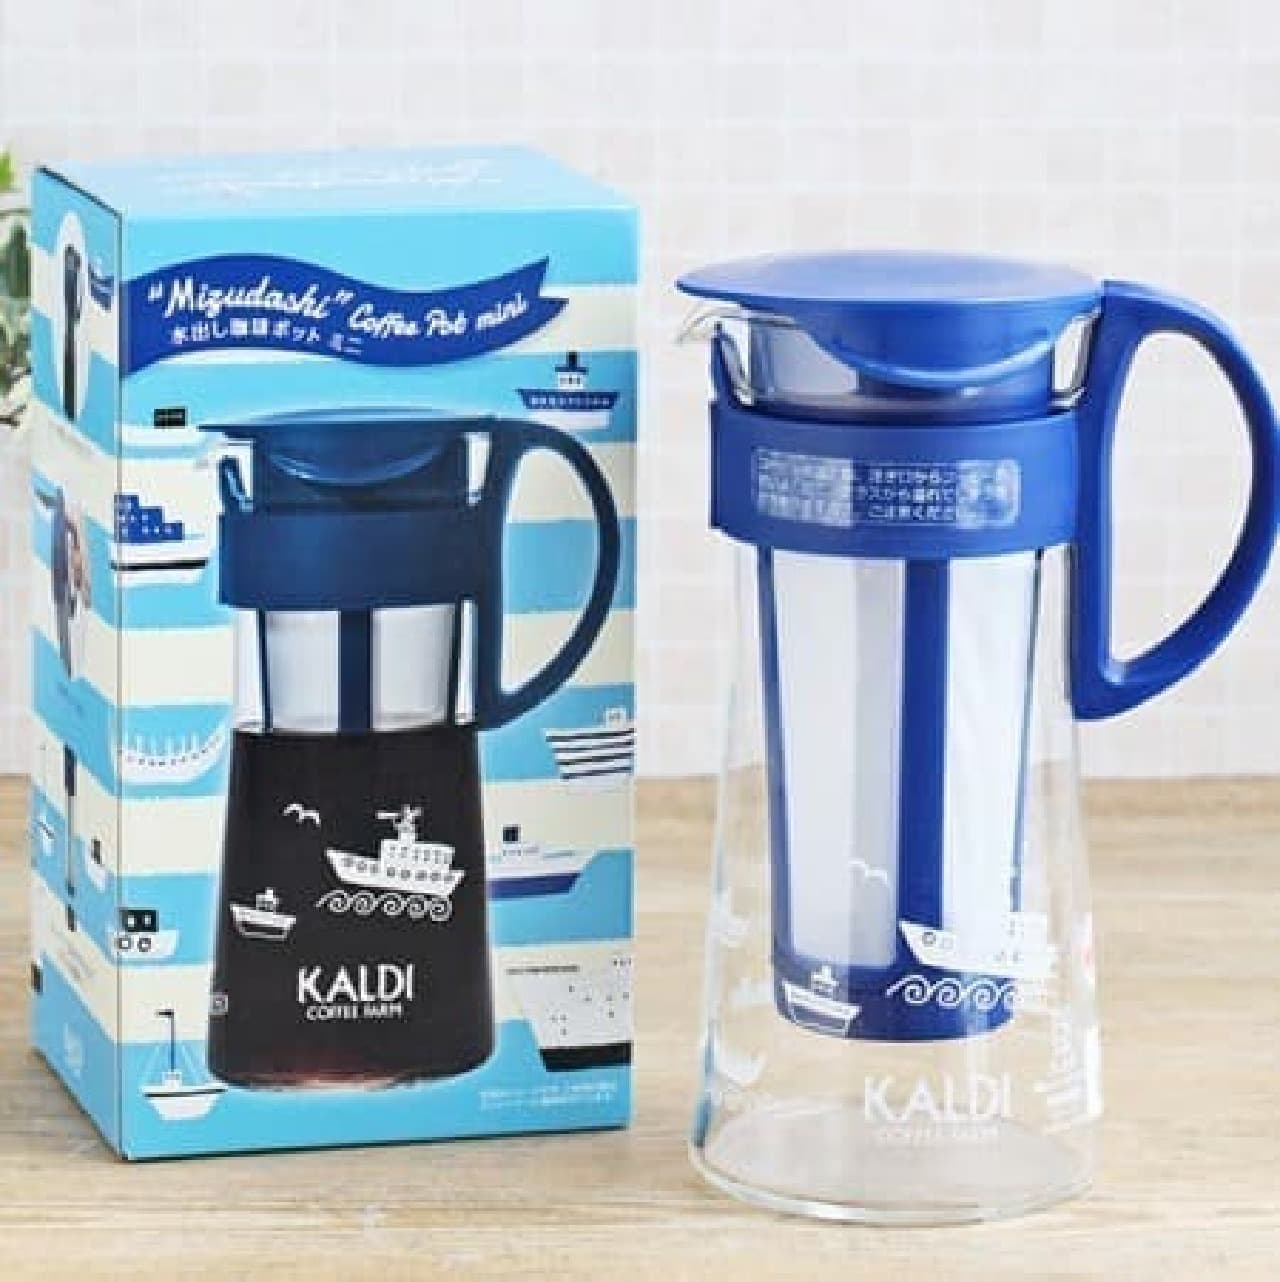 "Watered coffee set" in KALDI